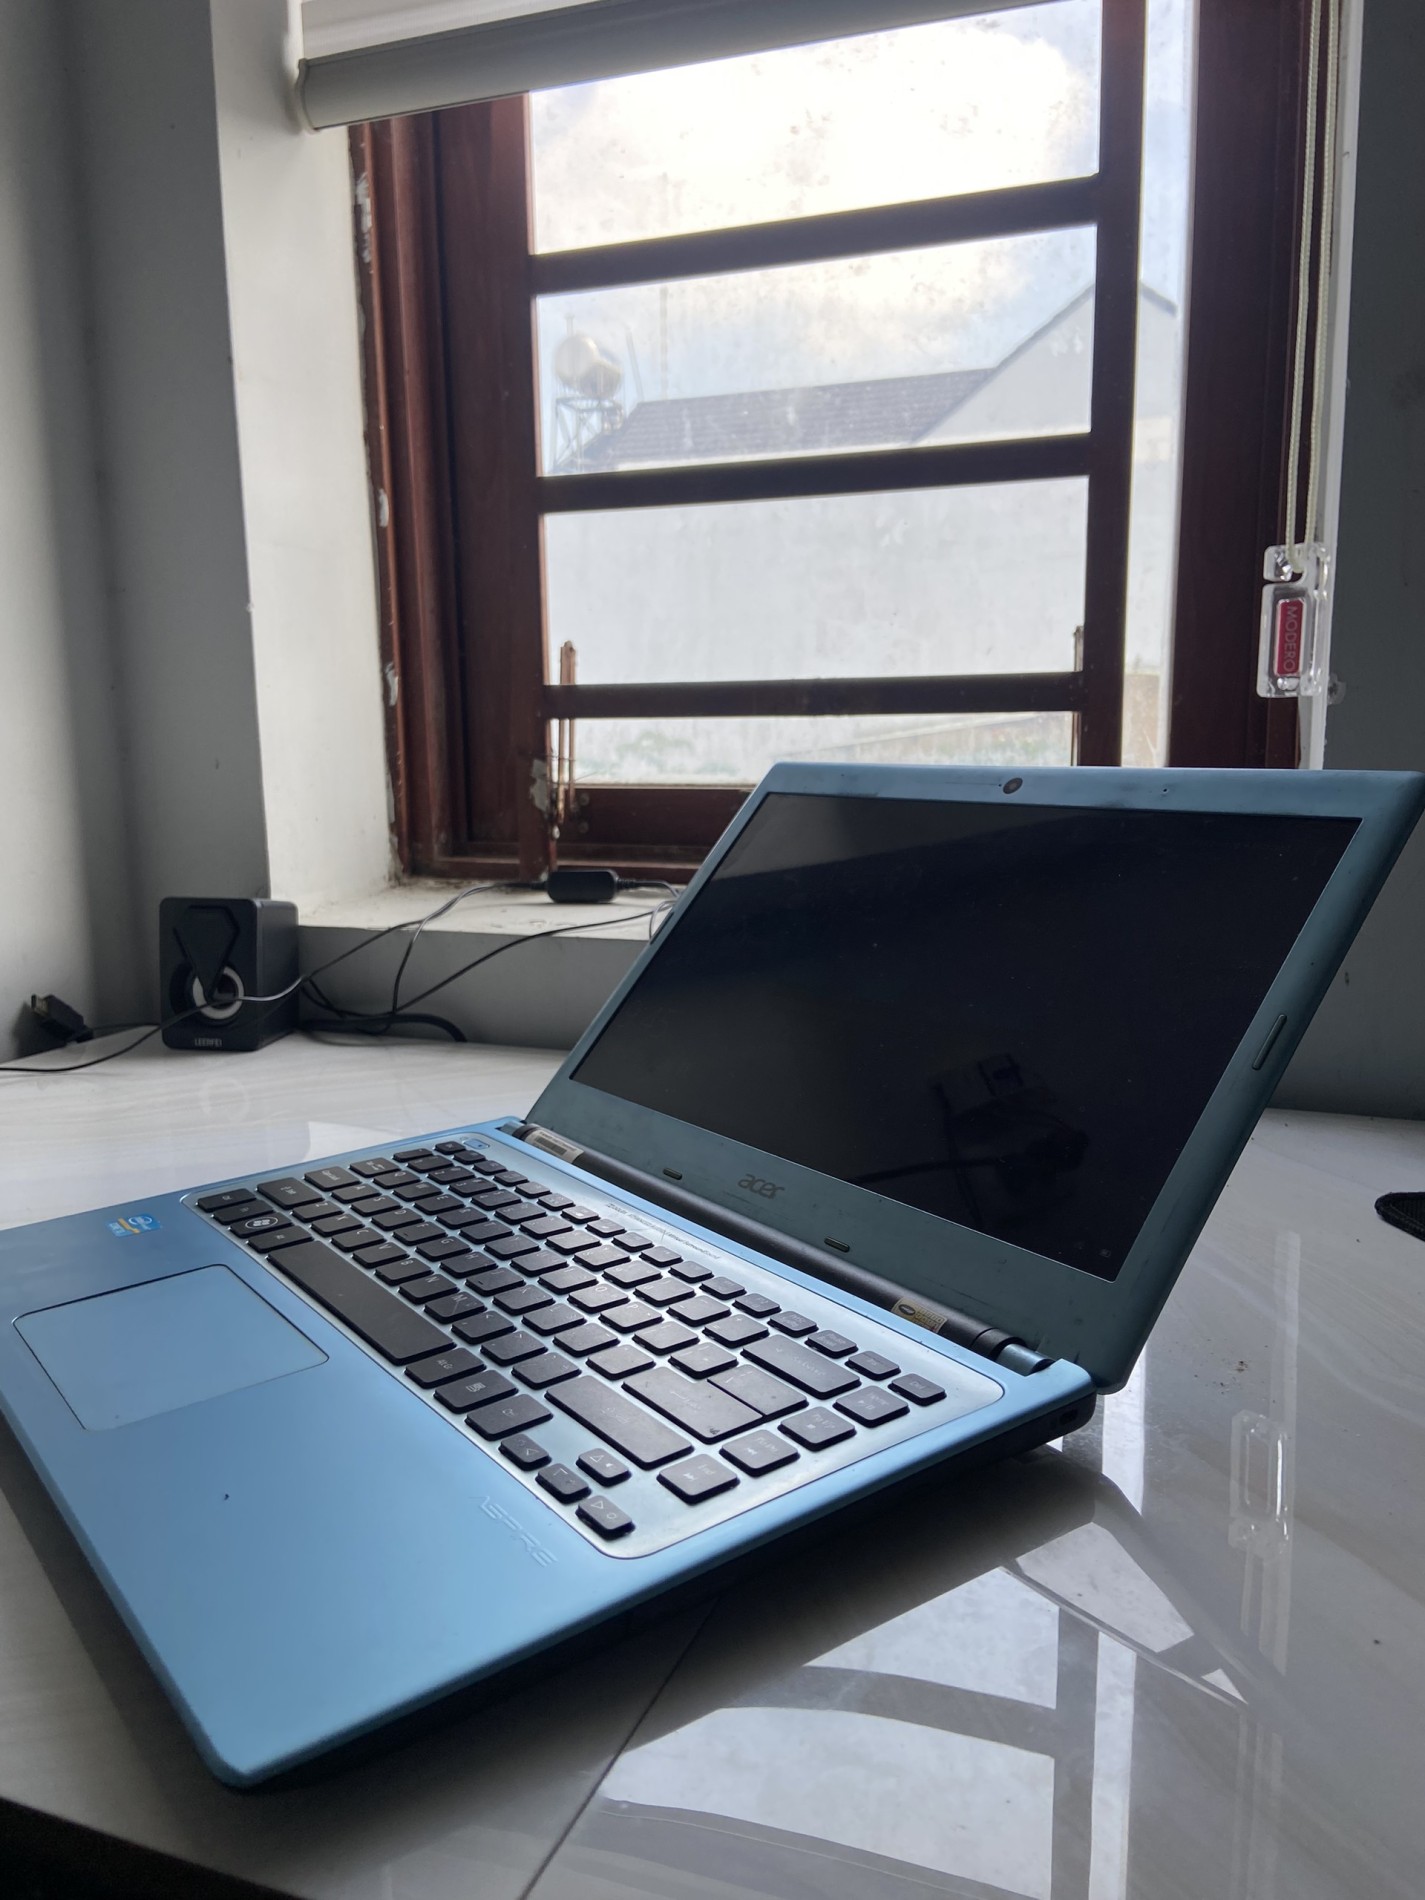 Laptop Acer Aspire V5 471